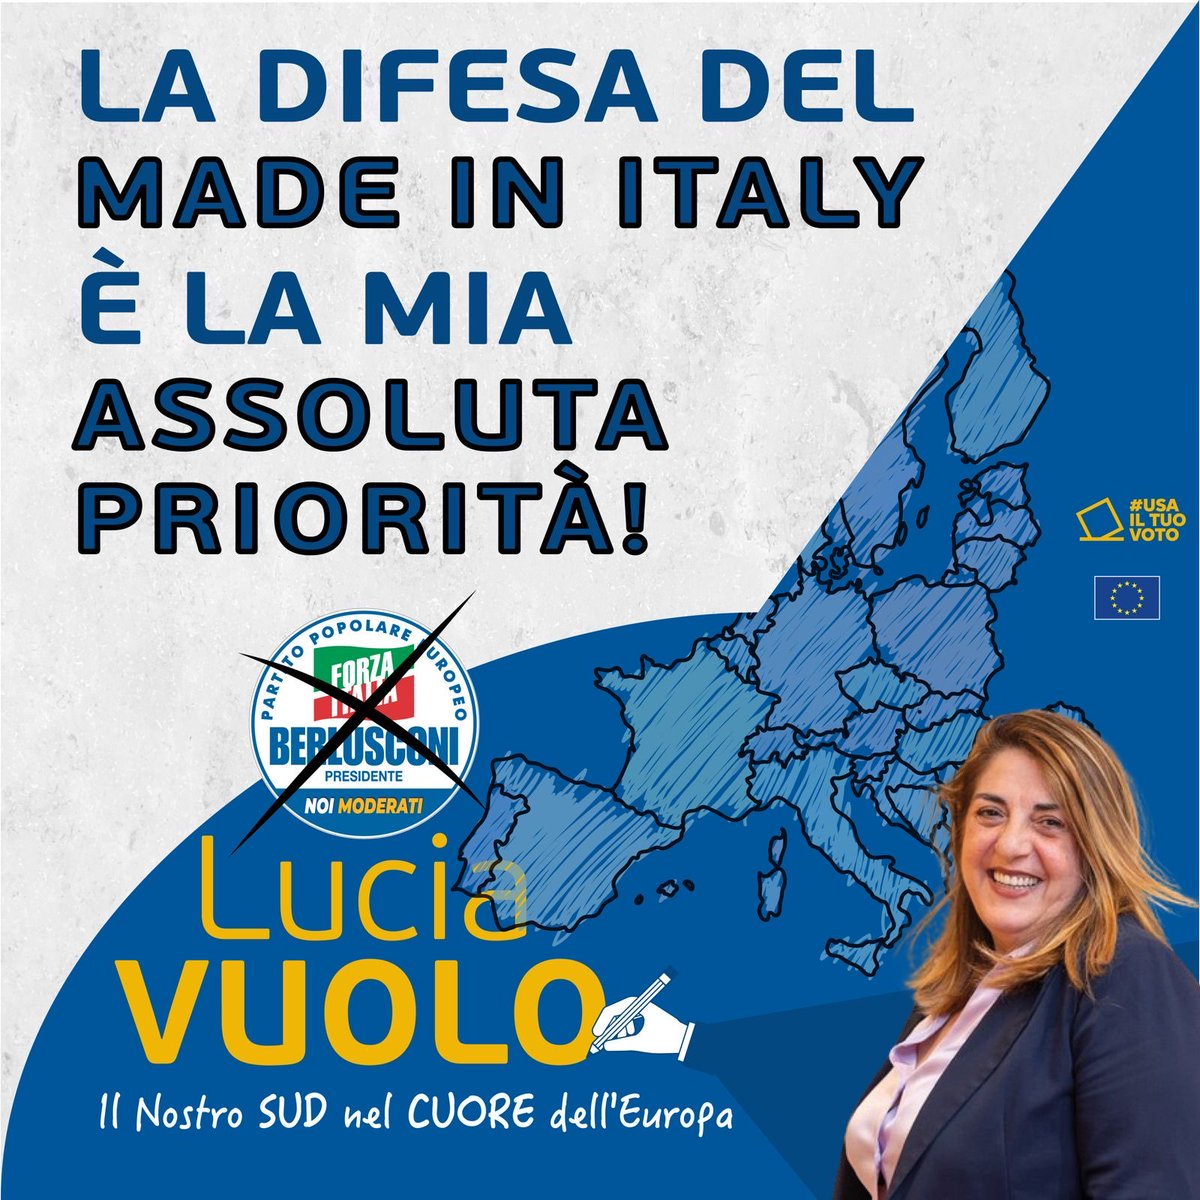 #MadeInItaly: i prodotti italiani agroalimentari sono un patrimonio ineguagliabile! Sono in prima linea nella loro difesa. Il #SUD può migliorare ancora tanto per la loro promozione! #VUOLO #votaVUOLO #scriviVUOLO #ilSUDnelCUORE #DonneInEuropa